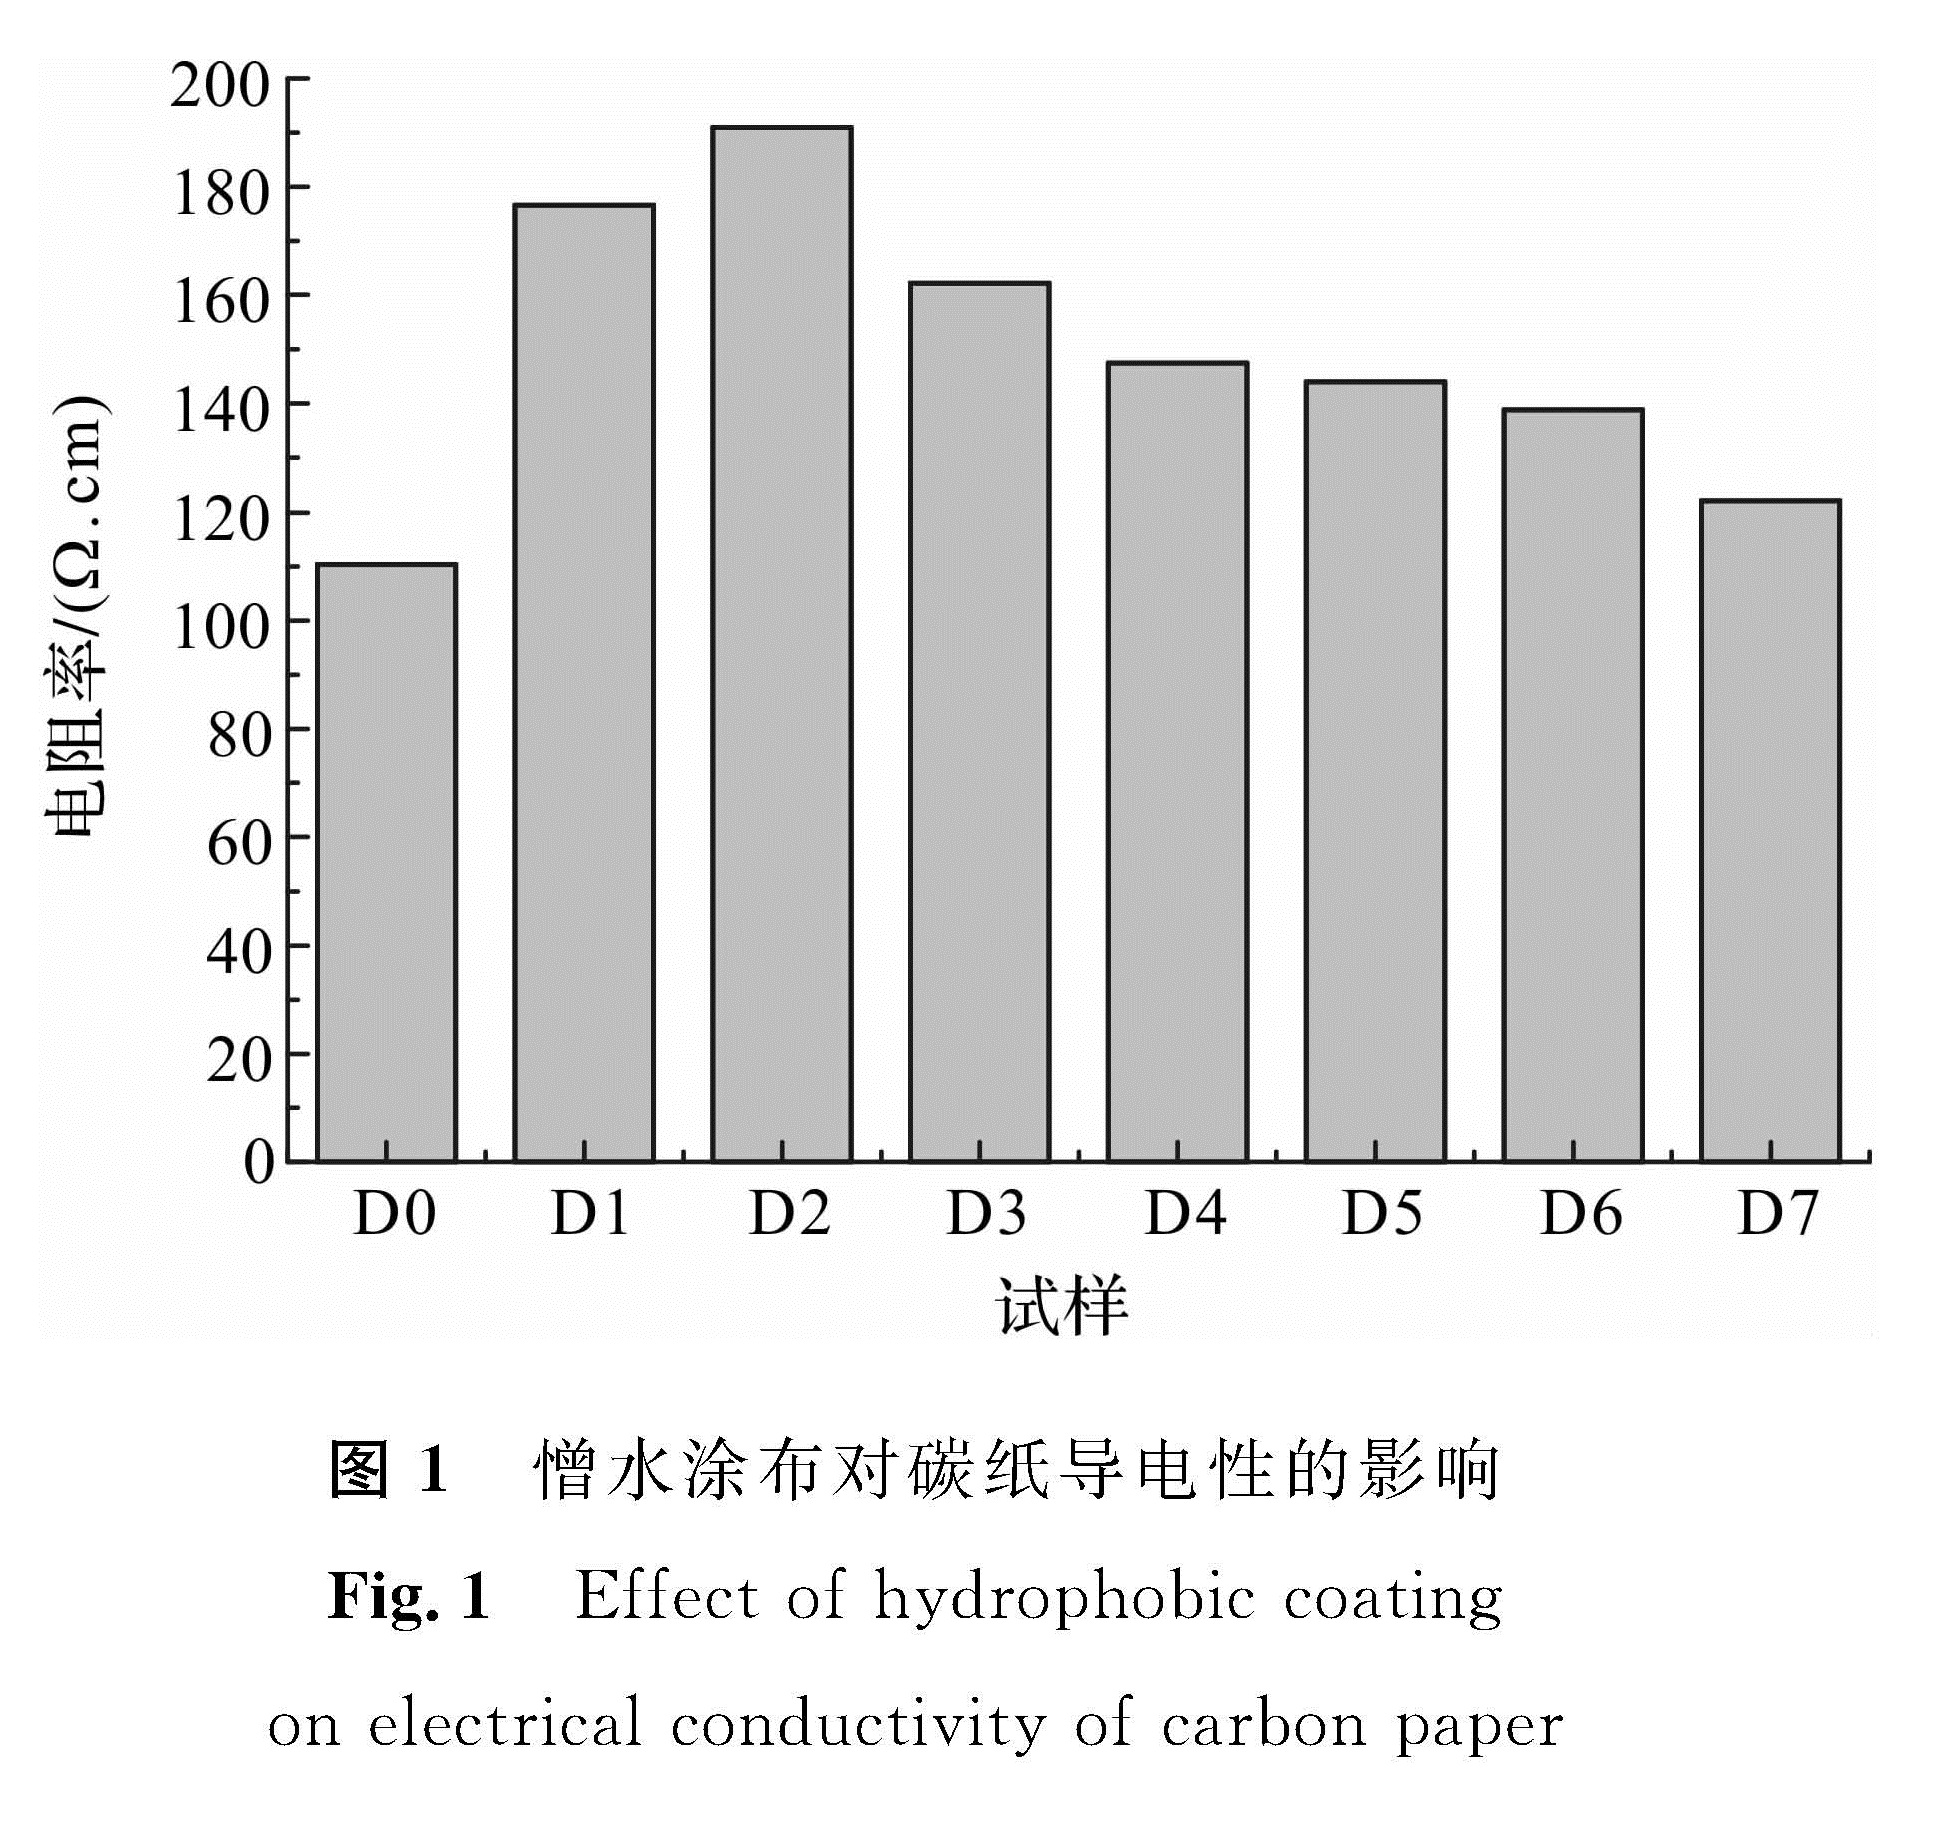 图1 憎水涂布对碳纸导电性的影响<br/>Fig.1 Effect of hydrophobic coating on electrical conductivity of carbon paper